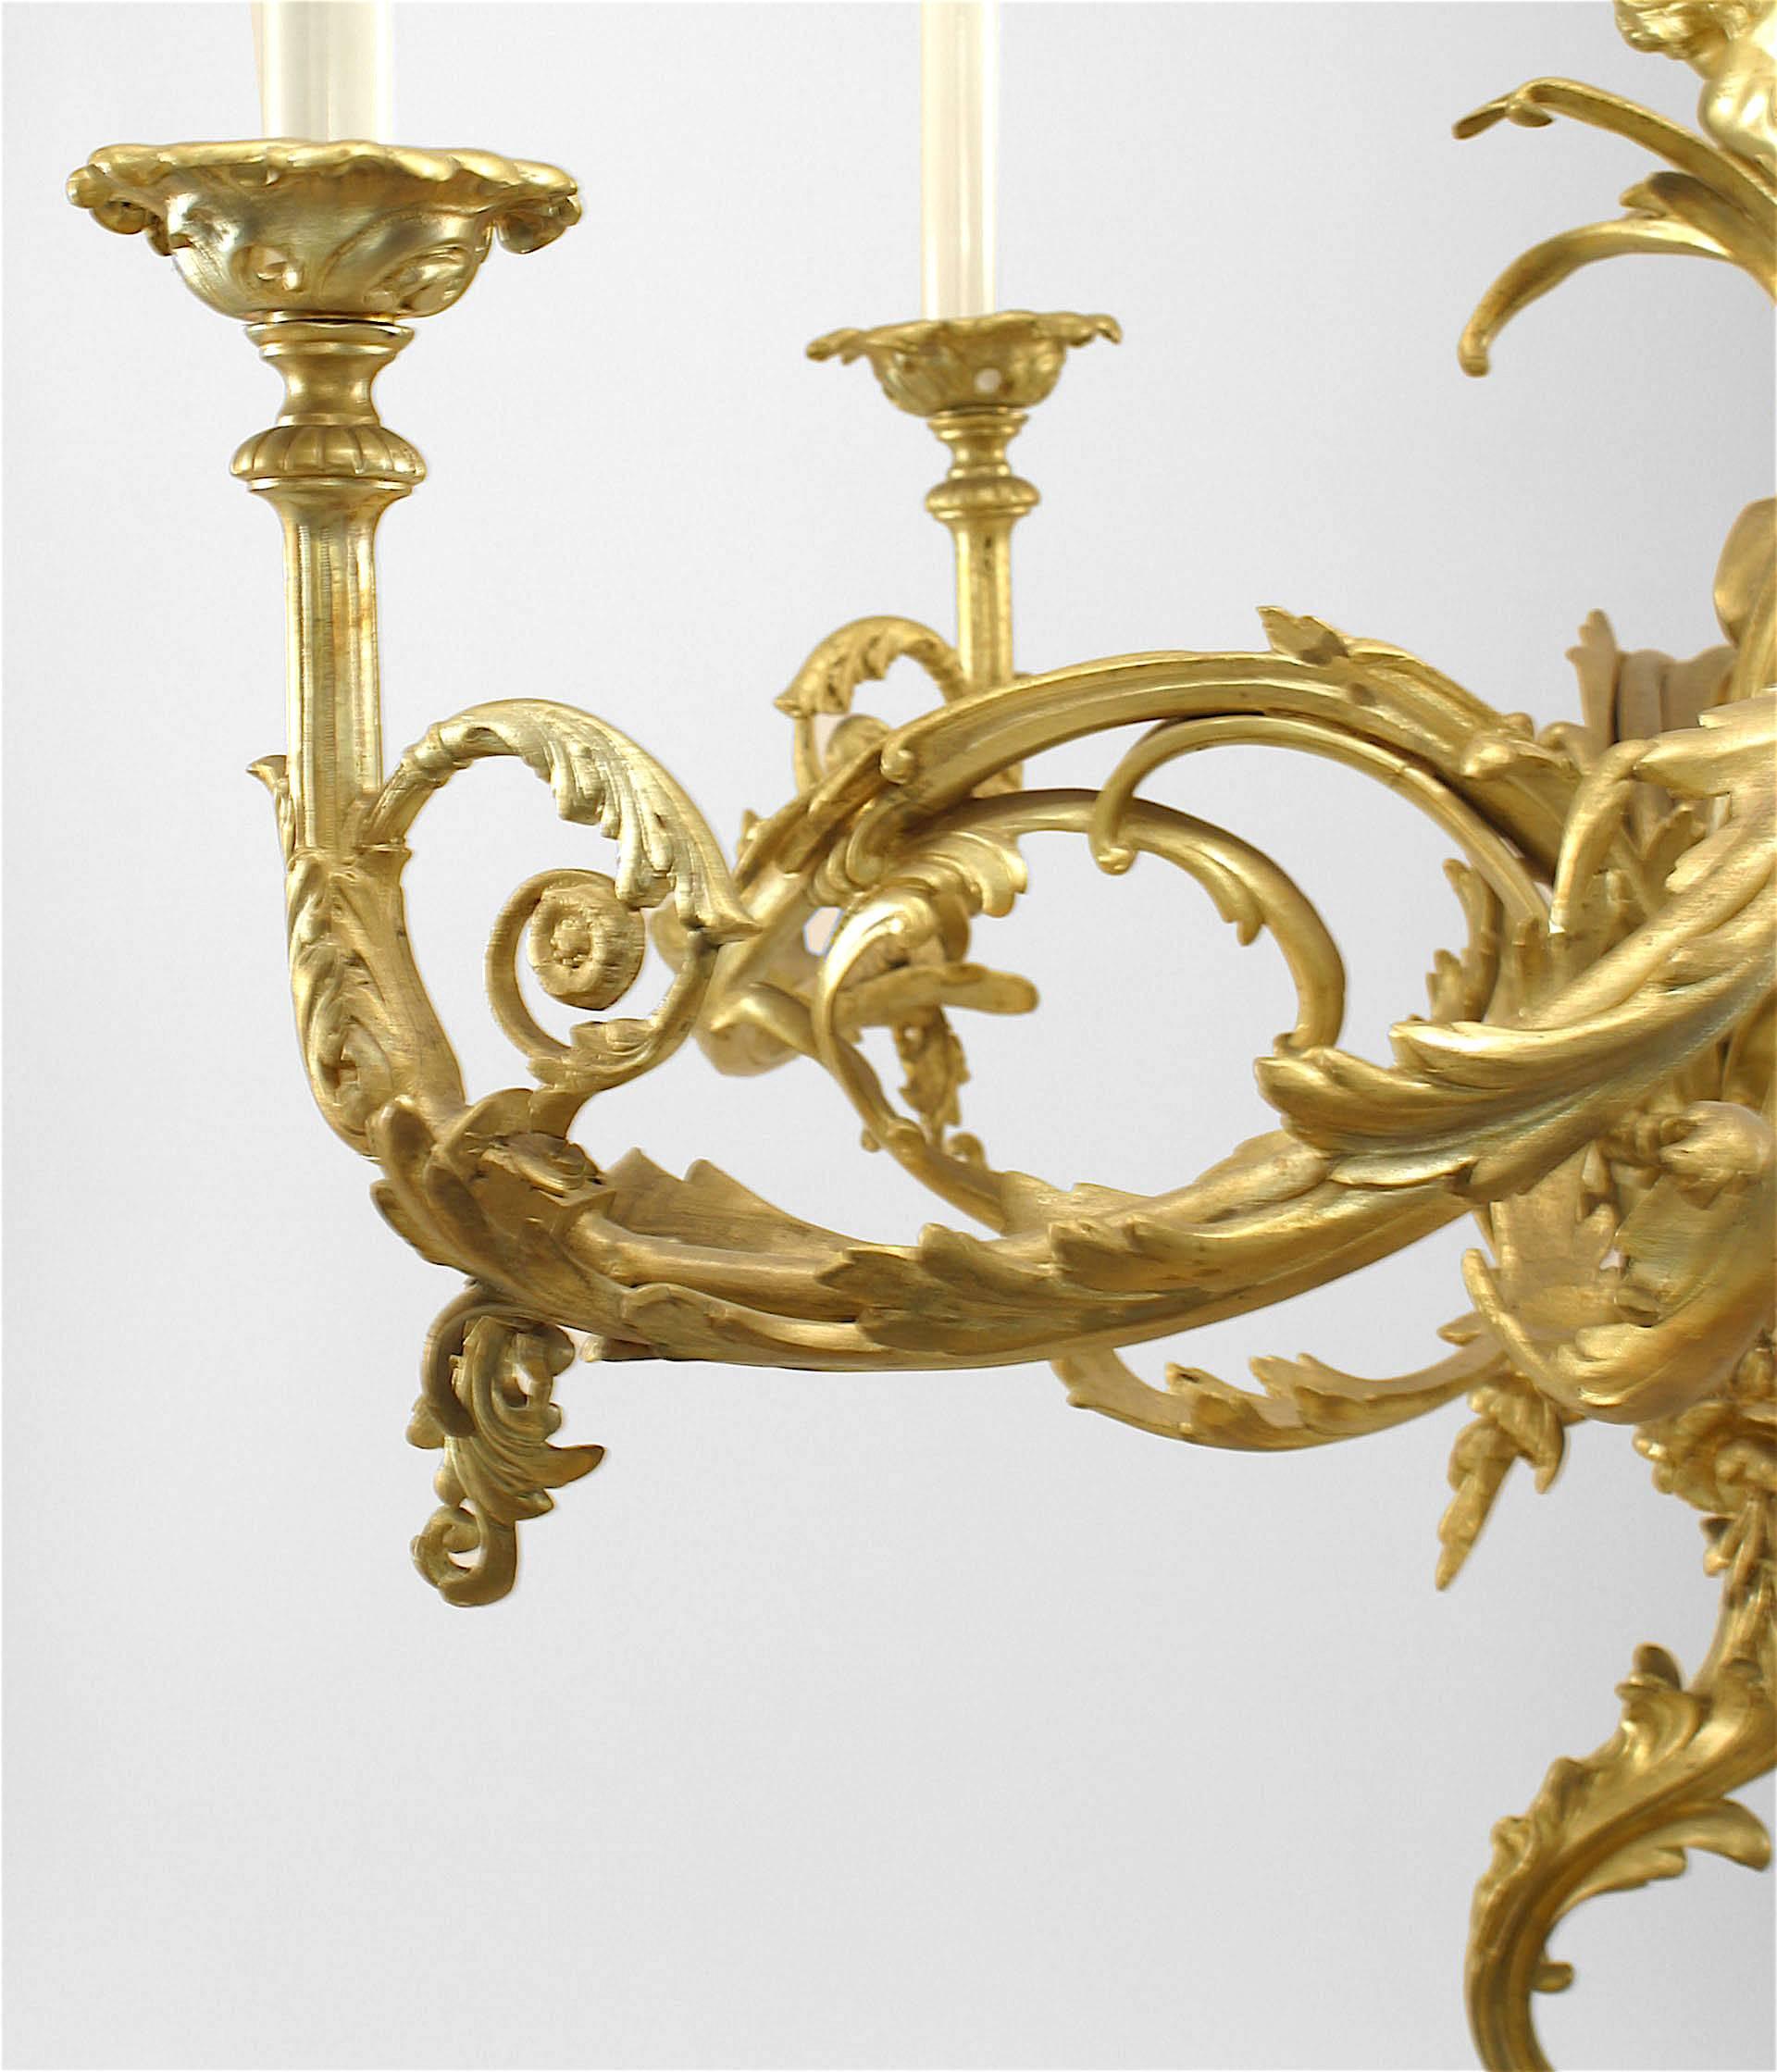 Französischer Kronleuchter aus vergoldeter Bronze im Louis XV-Stil (19./20. Jh.), mit 4 Rollenarmen und 2 Amor-Figuren auf einem zentralen Schaft mit Rollen oben und unten.
